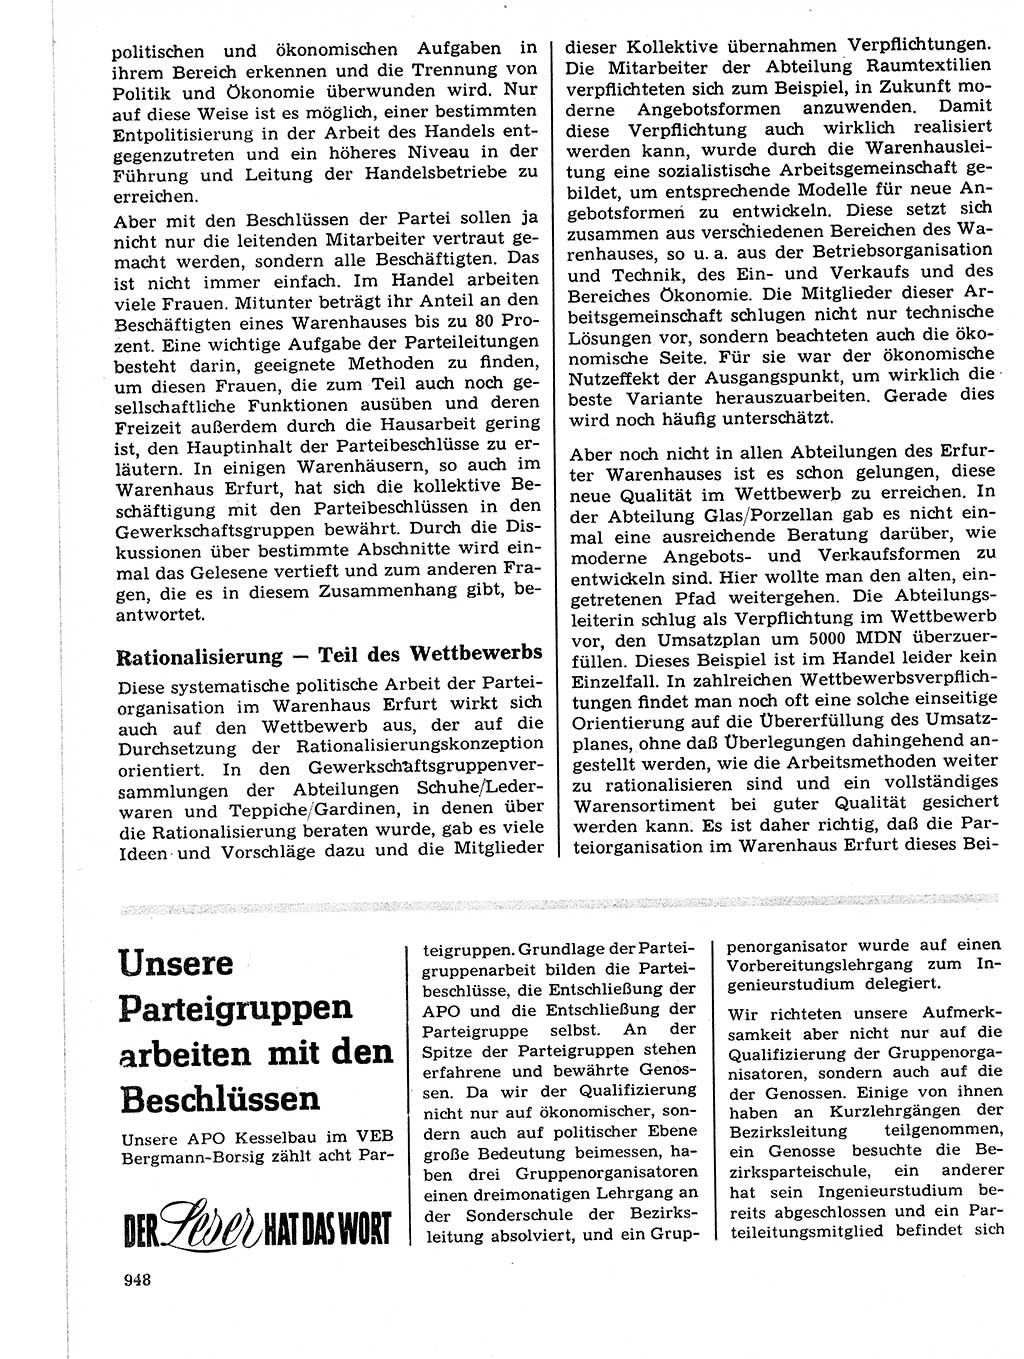 Neuer Weg (NW), Organ des Zentralkomitees (ZK) der SED (Sozialistische Einheitspartei Deutschlands) für Fragen des Parteilebens, 21. Jahrgang [Deutsche Demokratische Republik (DDR)] 1966, Seite 948 (NW ZK SED DDR 1966, S. 948)